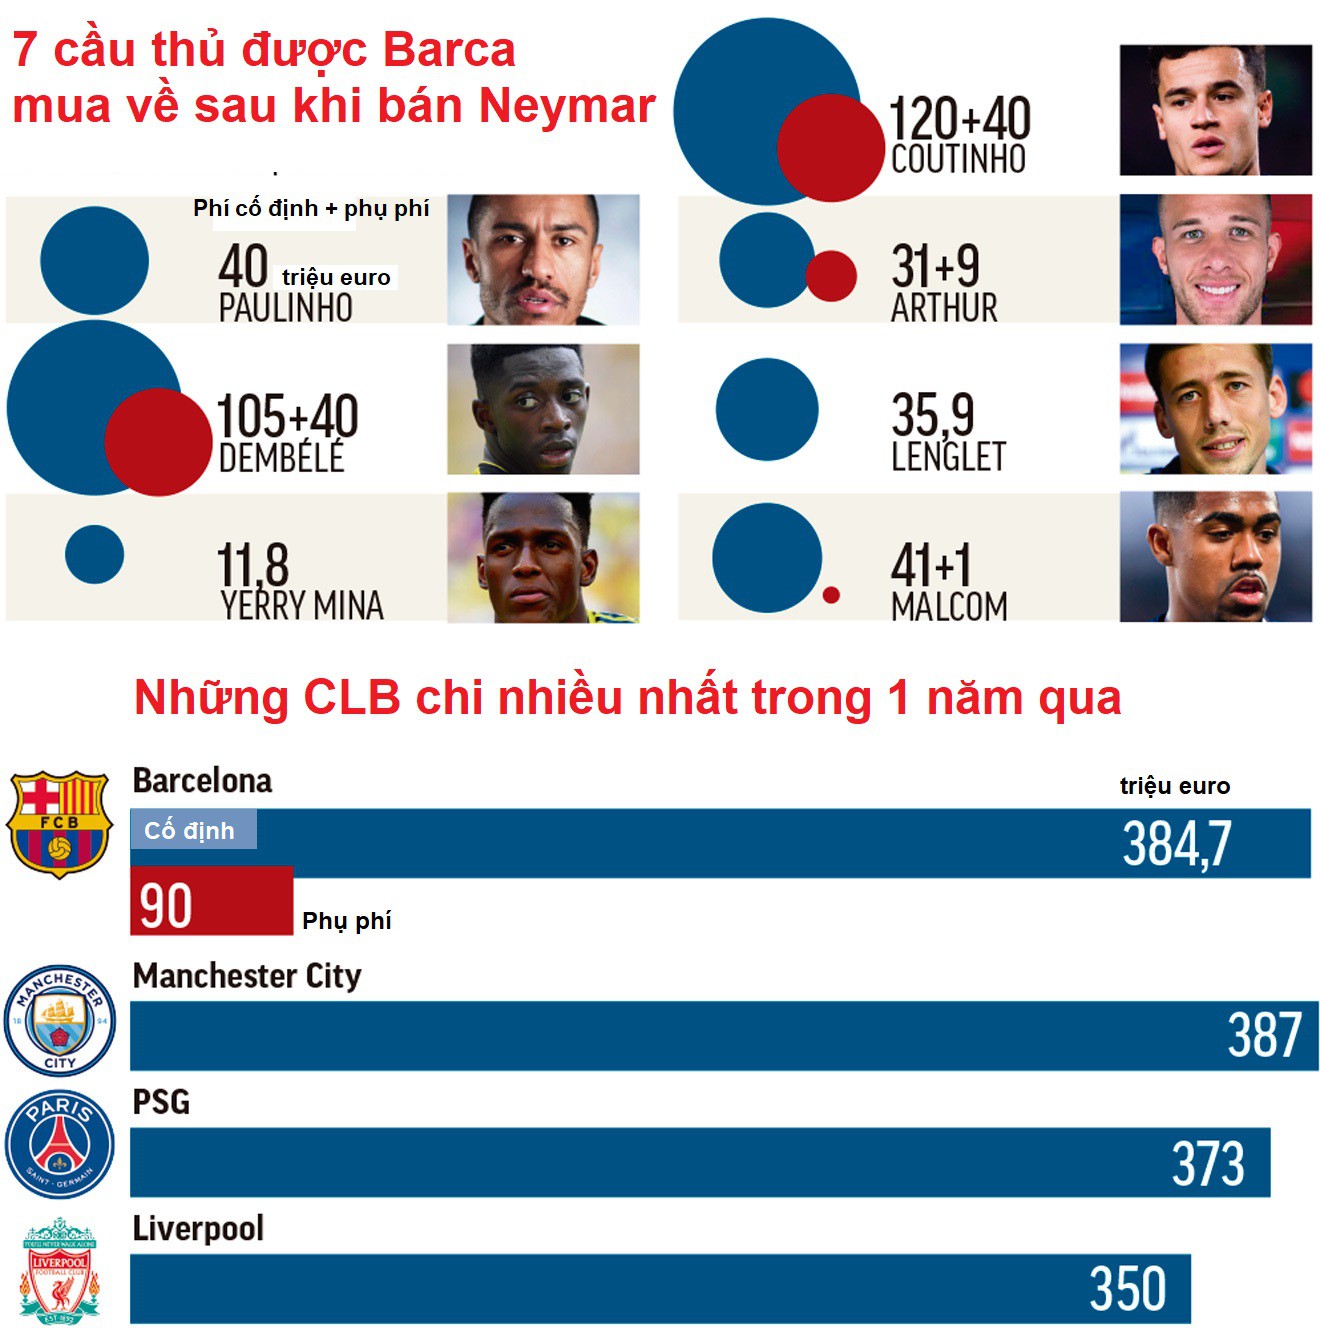 Barca tiêu... gấp đôi số tiền chuyển nhượng kỷ lục Neymar trong 2 năm như thế nào? - Ảnh 6.